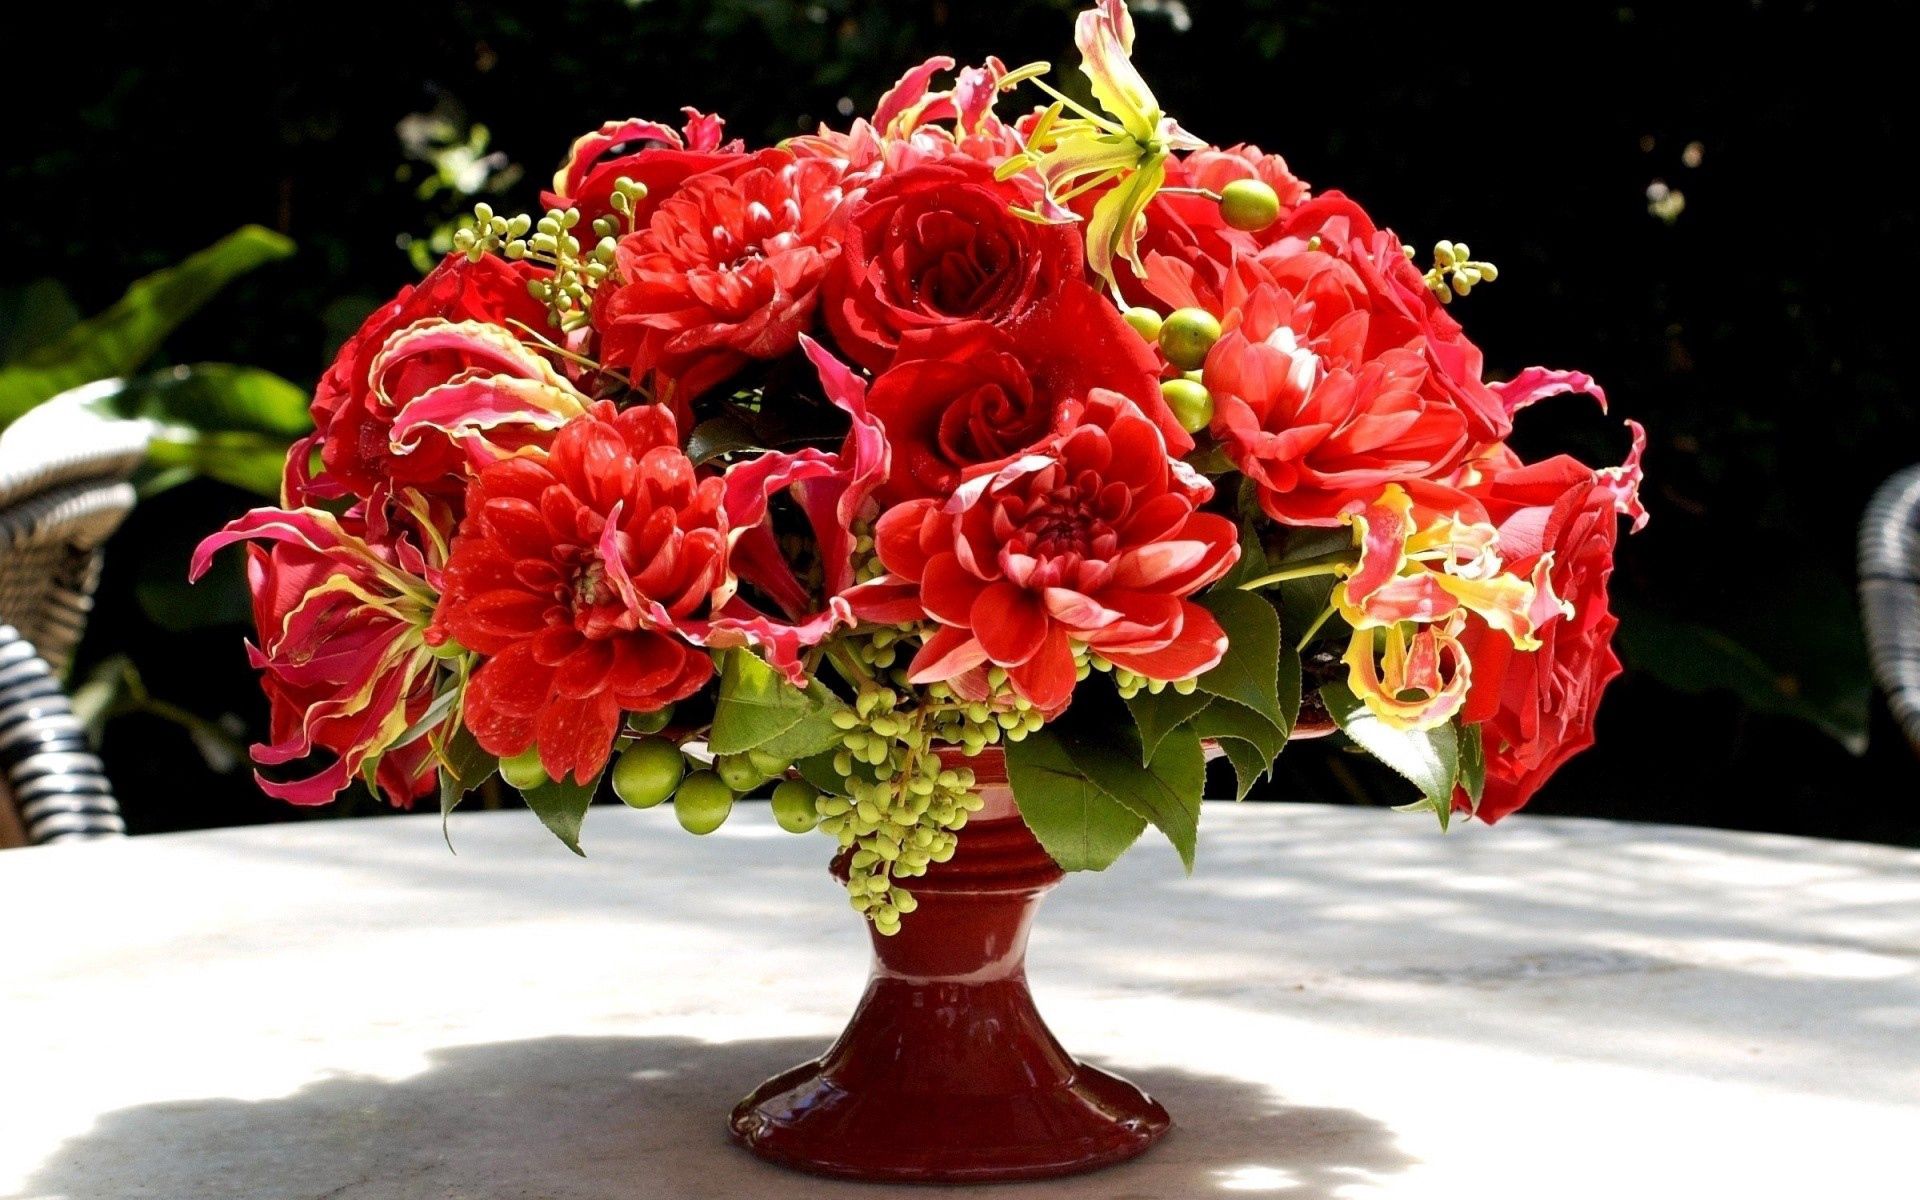 miscellaneous, miscellanea, flowers, bouquet, vase HD for desktop 1080p